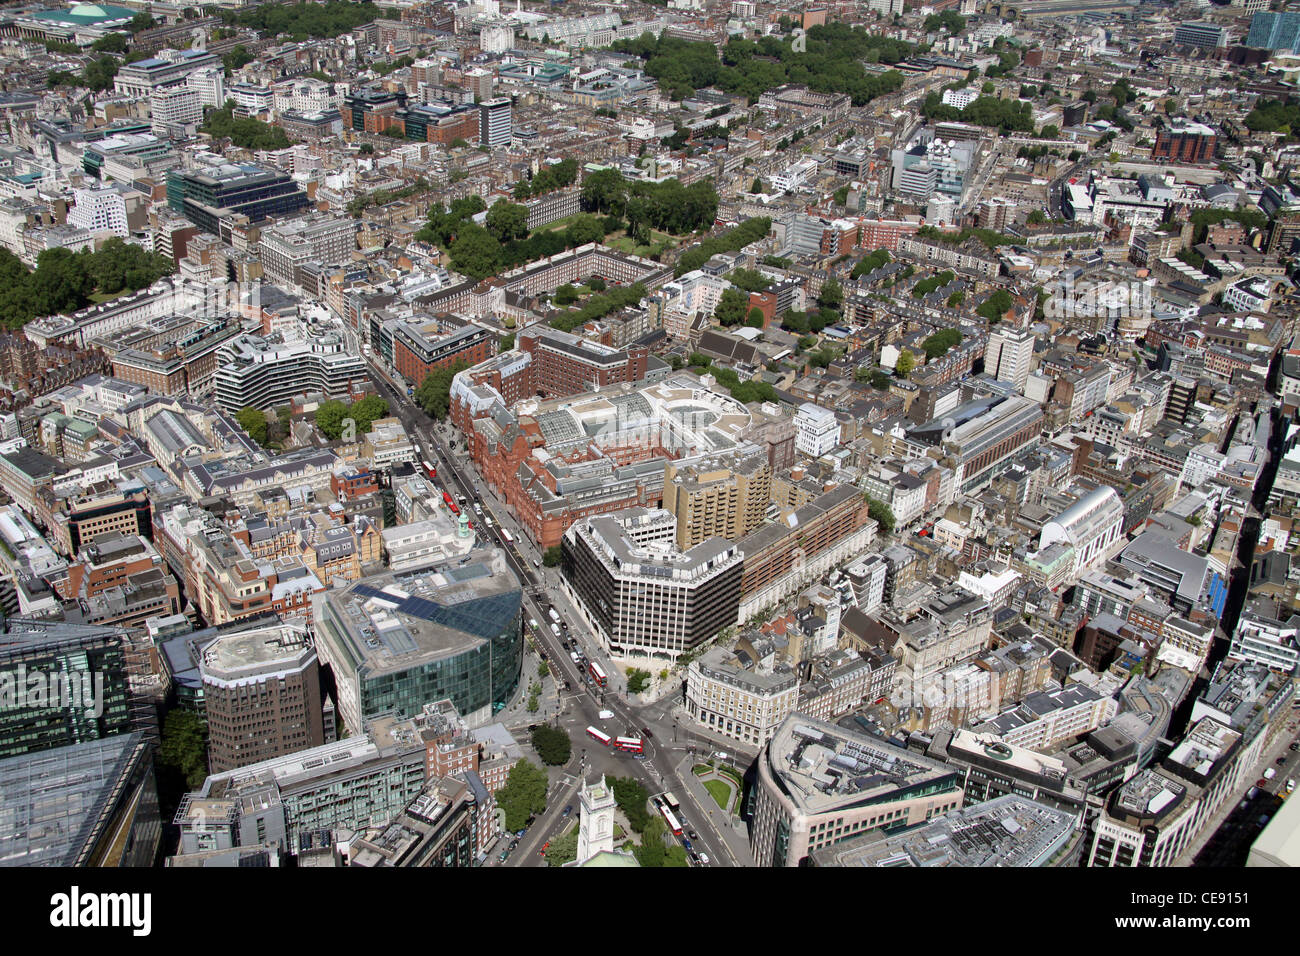 Vista aérea mirando al noroeste desde el centro comercial Waterhouse Square al otro lado de Gray's Inn Square, Holborn, Londres EC1 Foto de stock